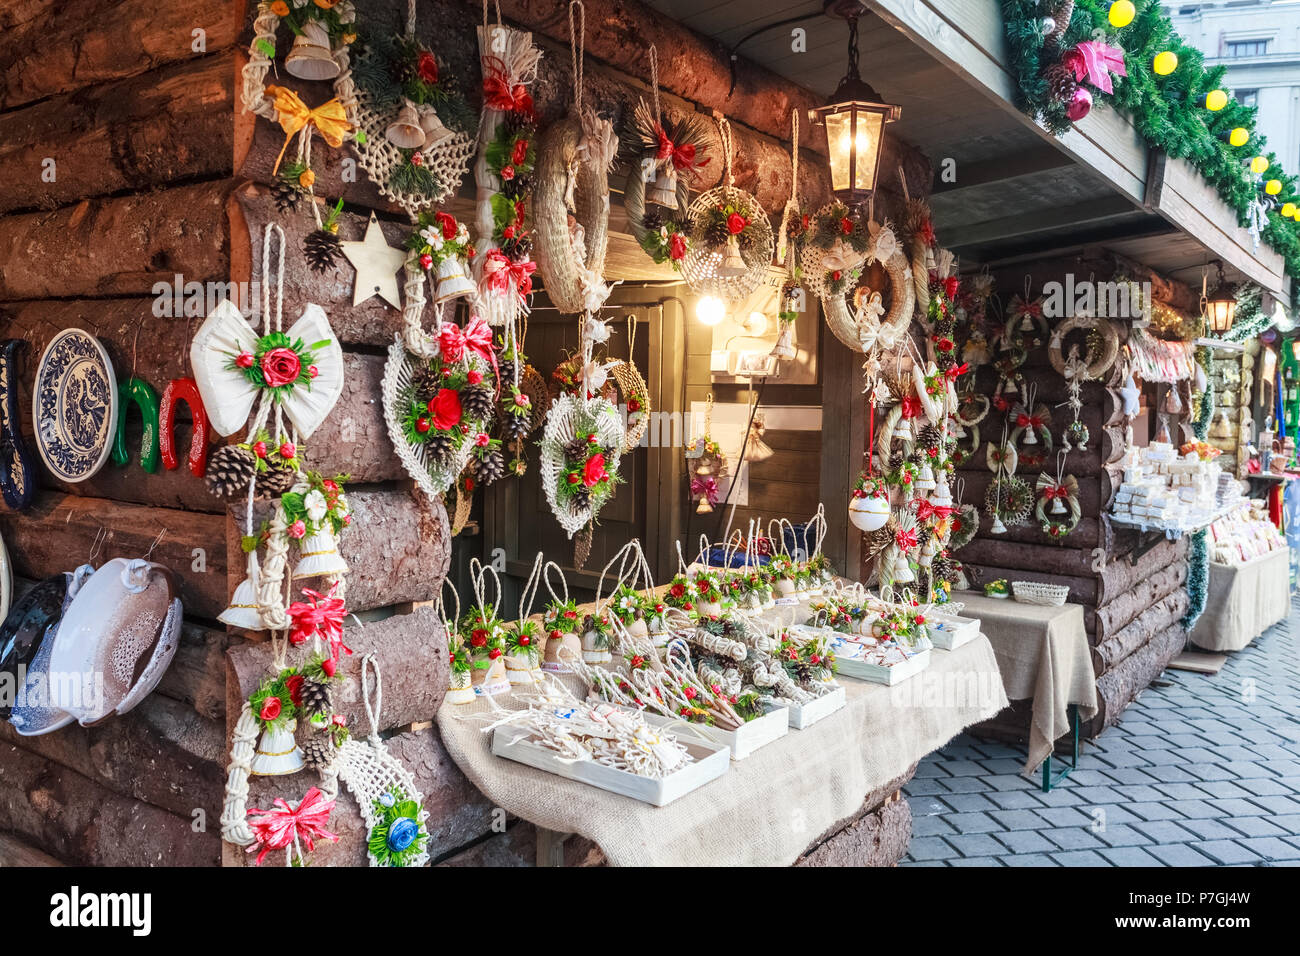 Souvenirs artesanales tradicionales en el mercado de Navidad de la ciudad de Bucarest, Rumania Foto de stock